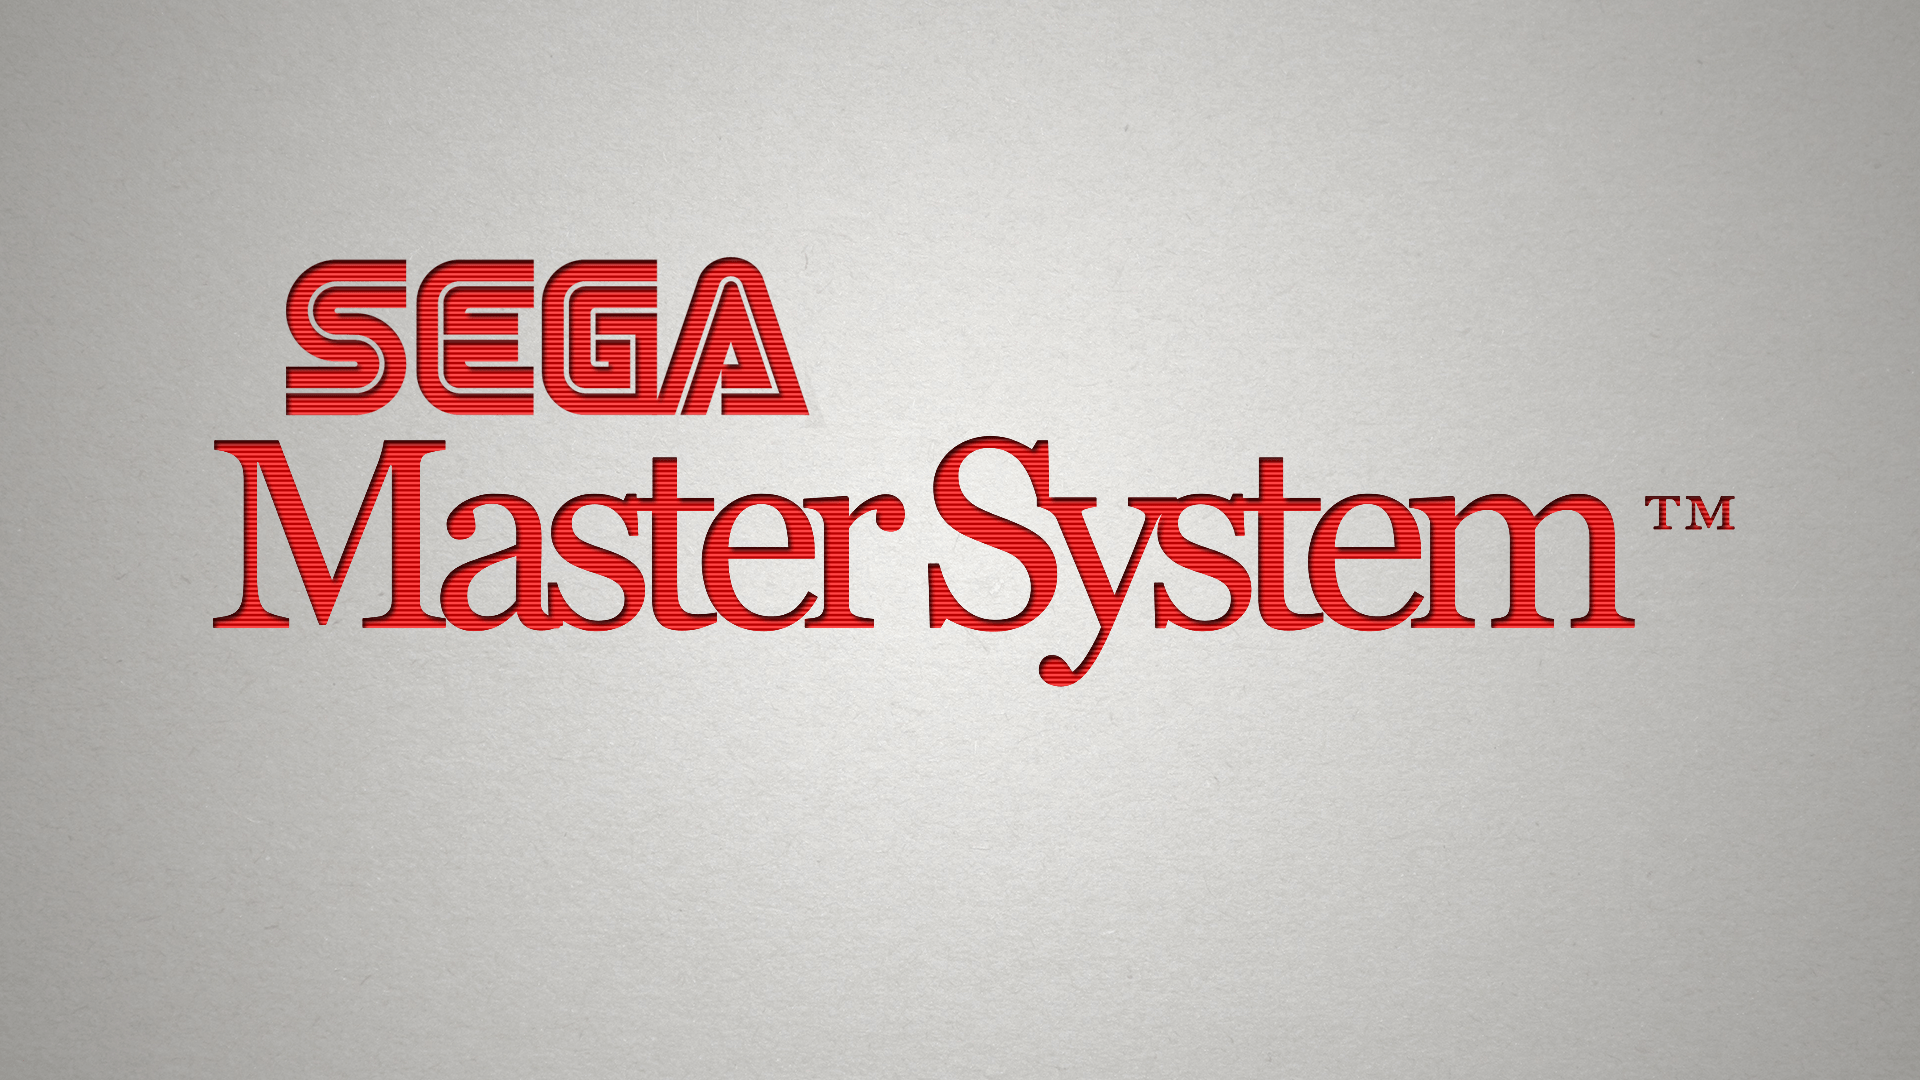 Master System HD Wallpaper